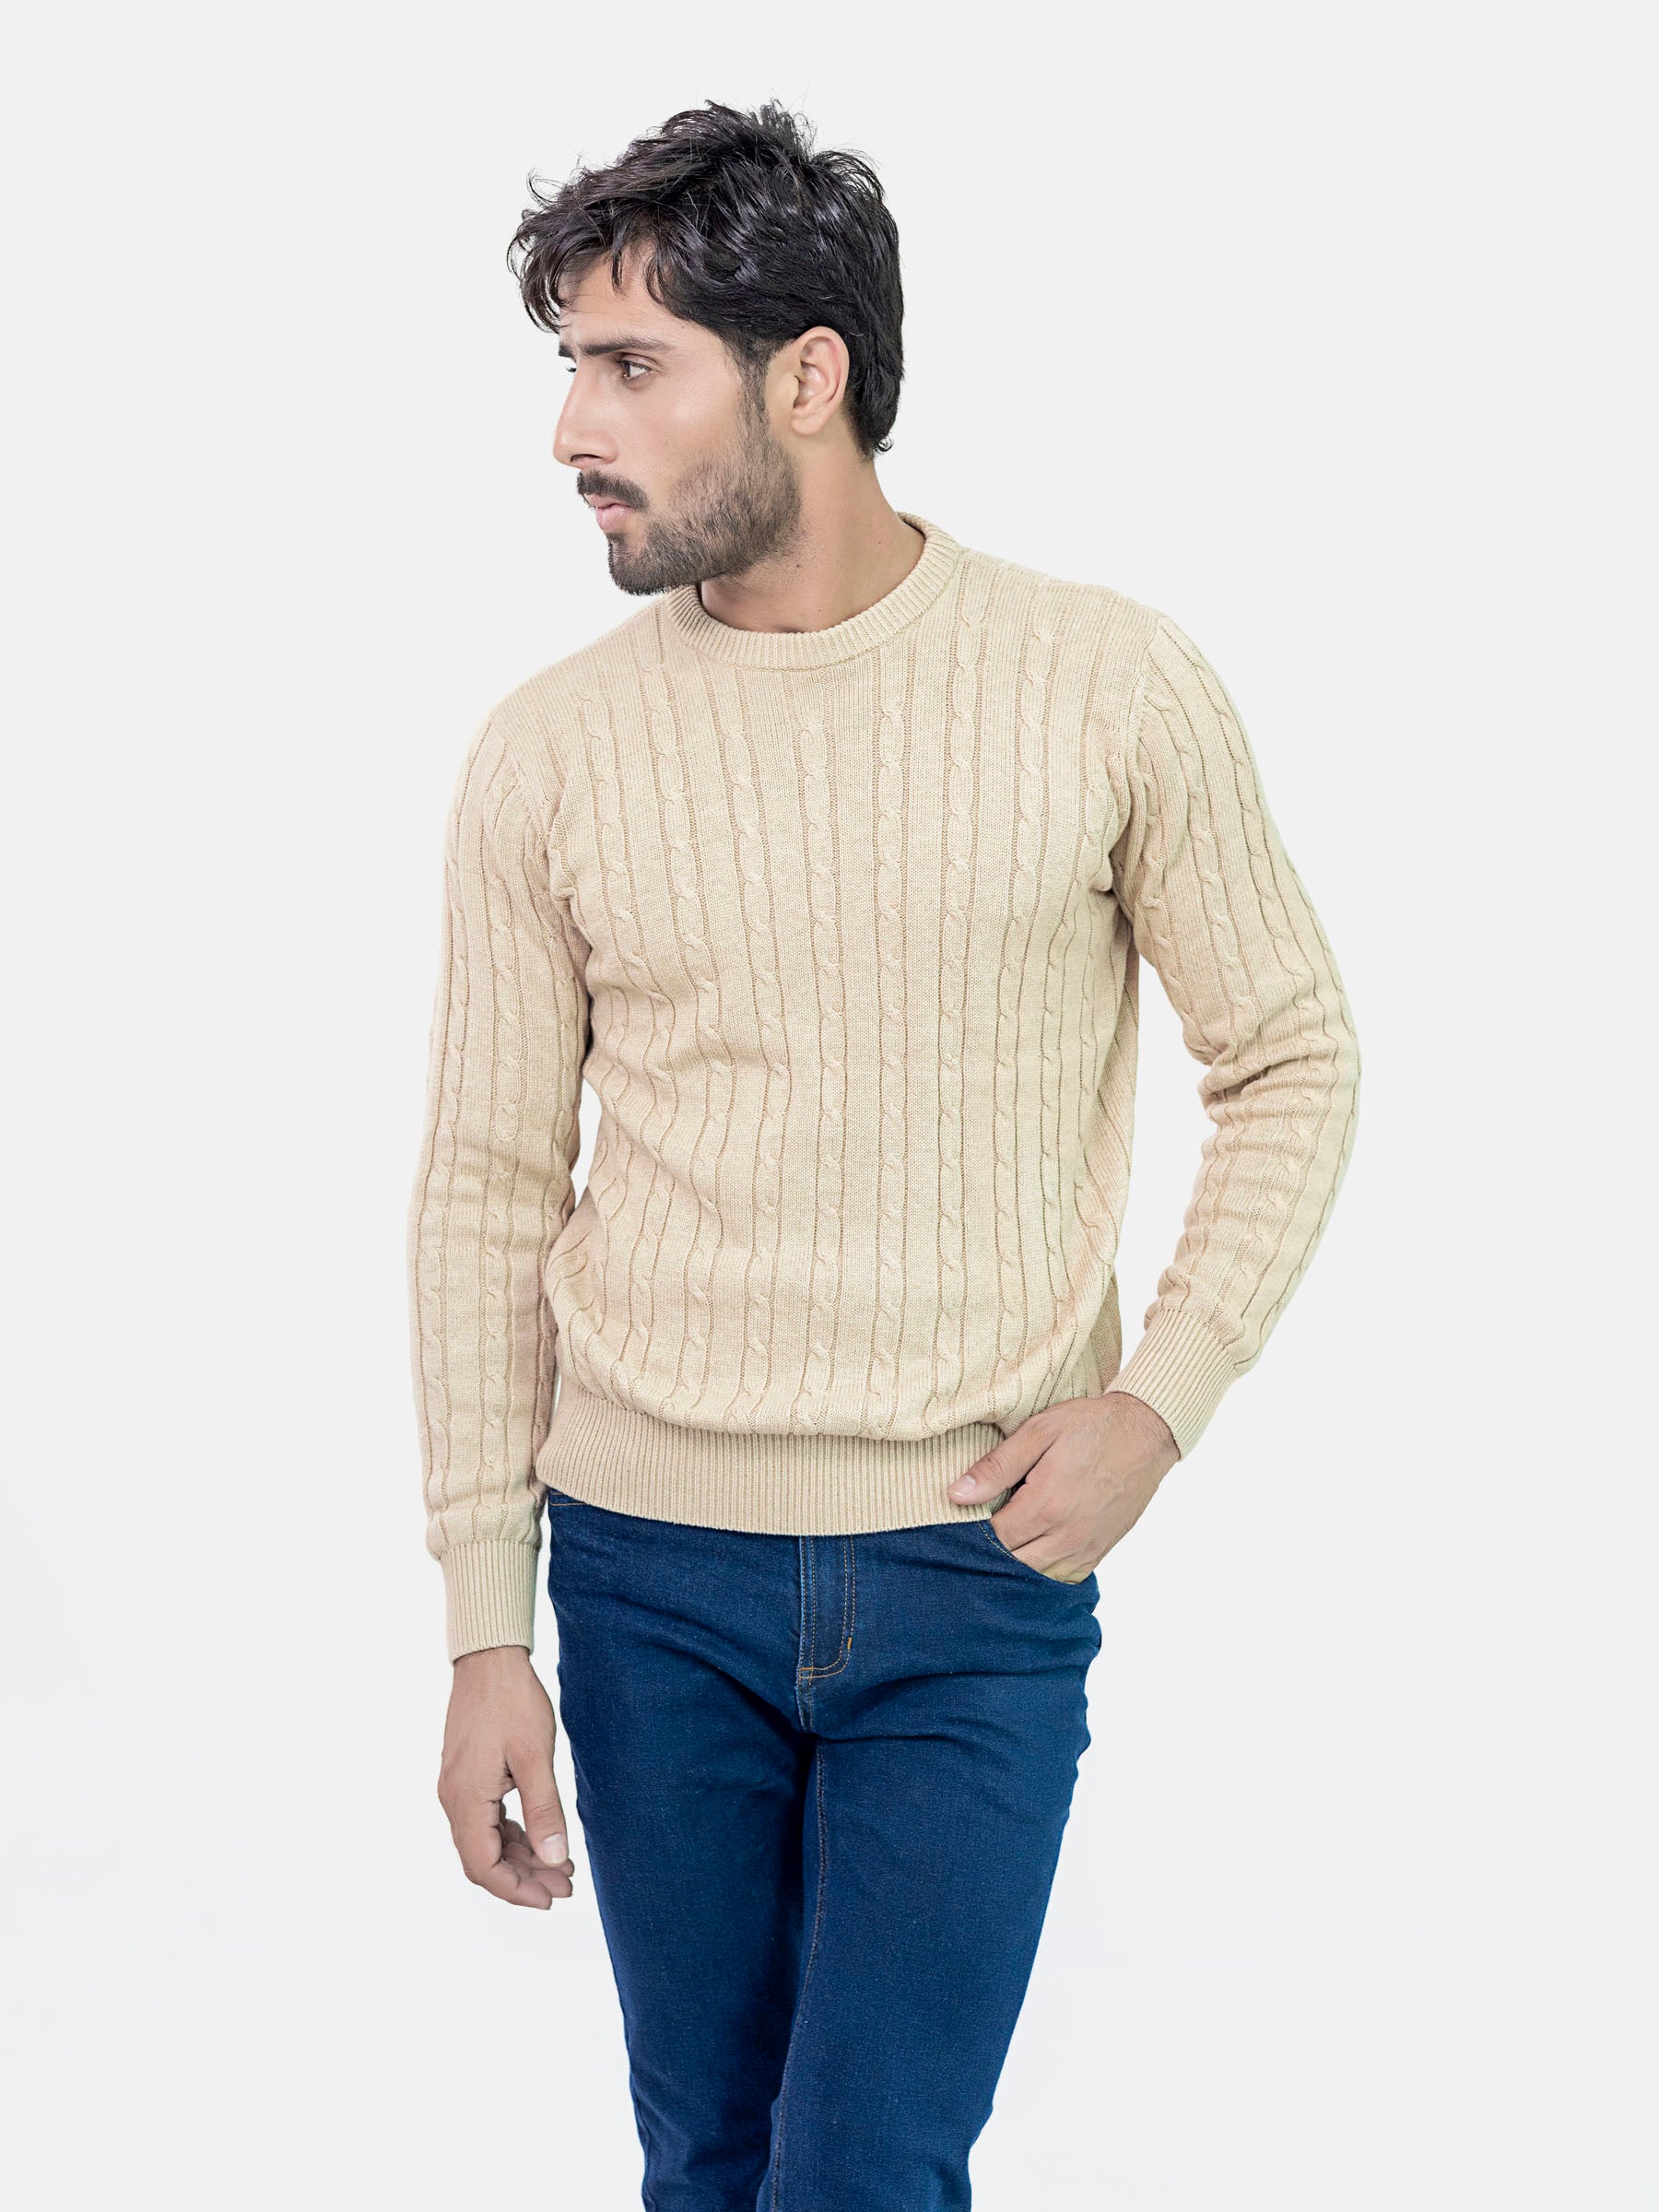 Buy Men's Sweaters Online In Pakistan - Brumano Menswear